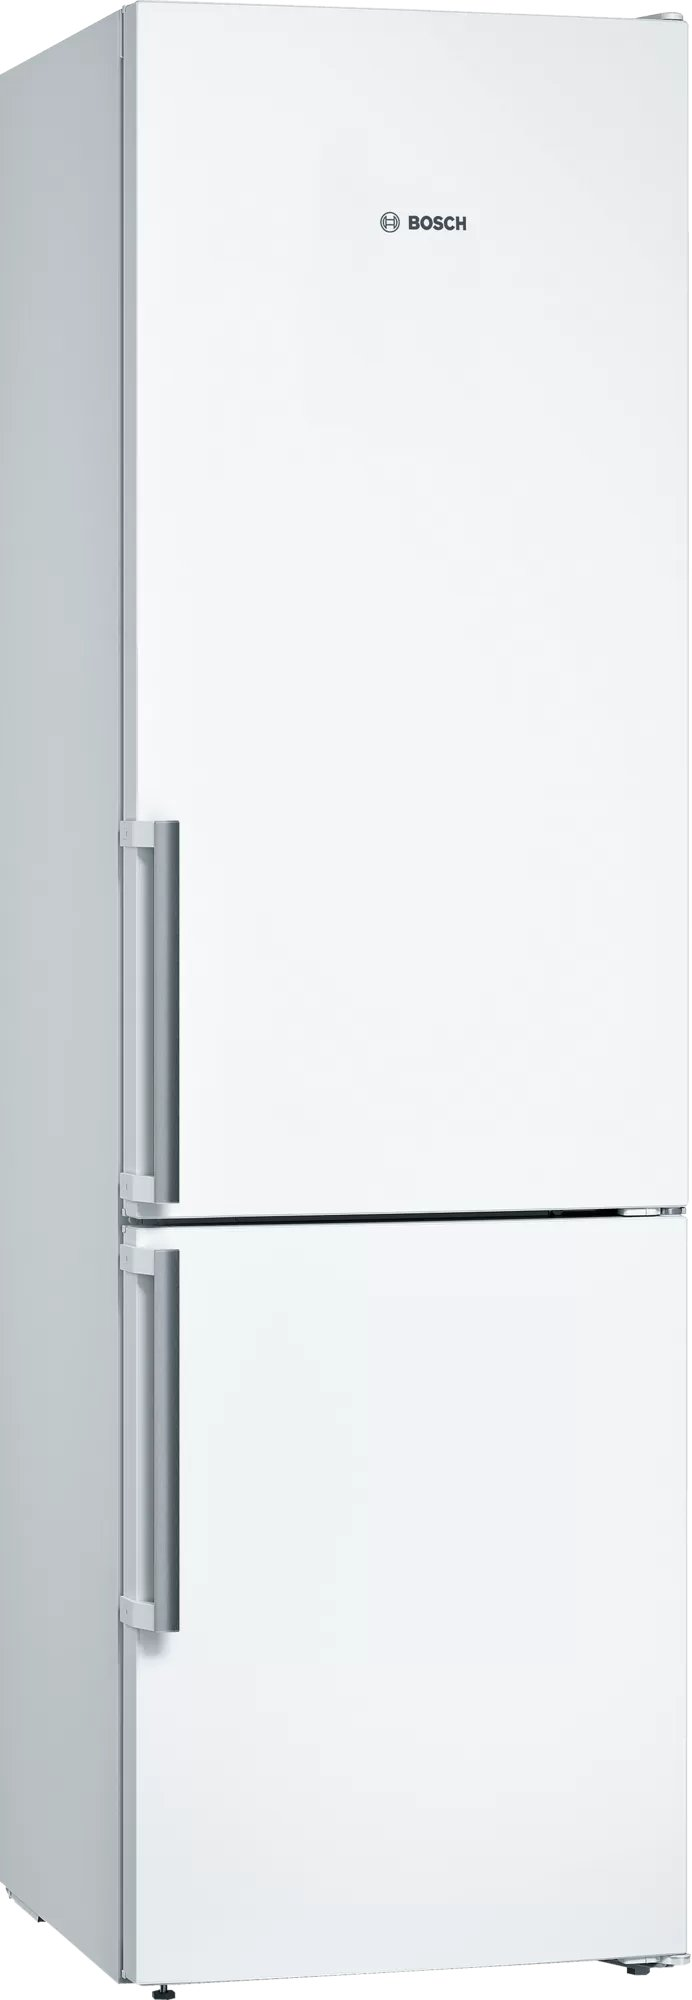 Холодильник Bosch KGN39VWEQ белый холодильник bosch kgn39izea